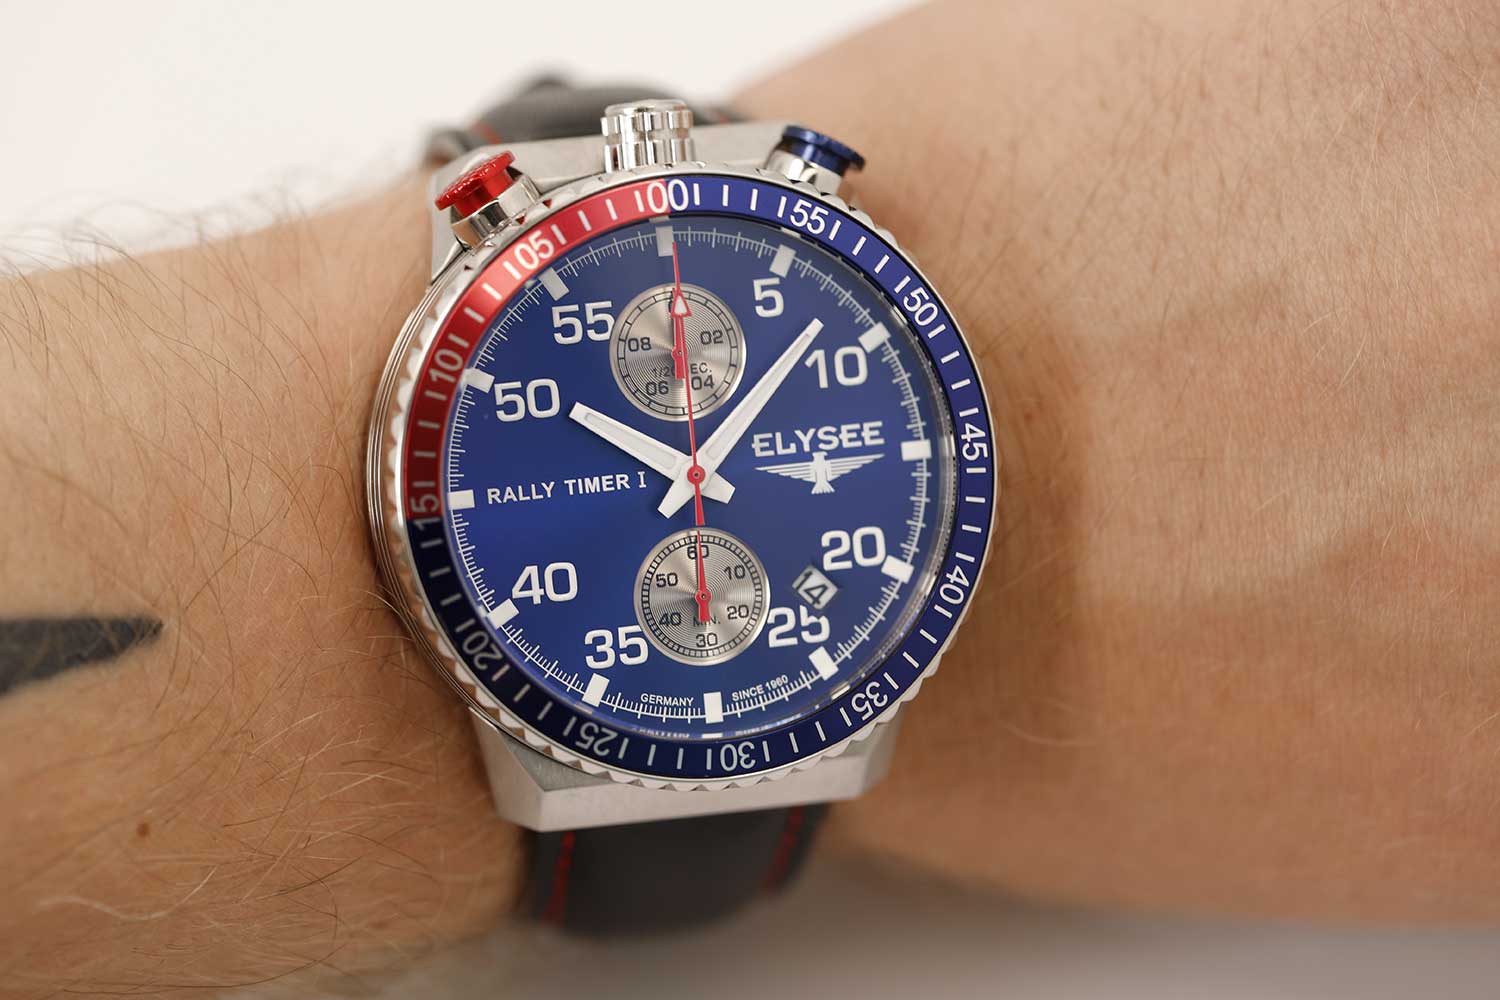 Наручные часы Elysee (Элиси) Rally цены купить в — каталоге интернет-магазина официальном Timer AllTime.ru, I и фото сайте на